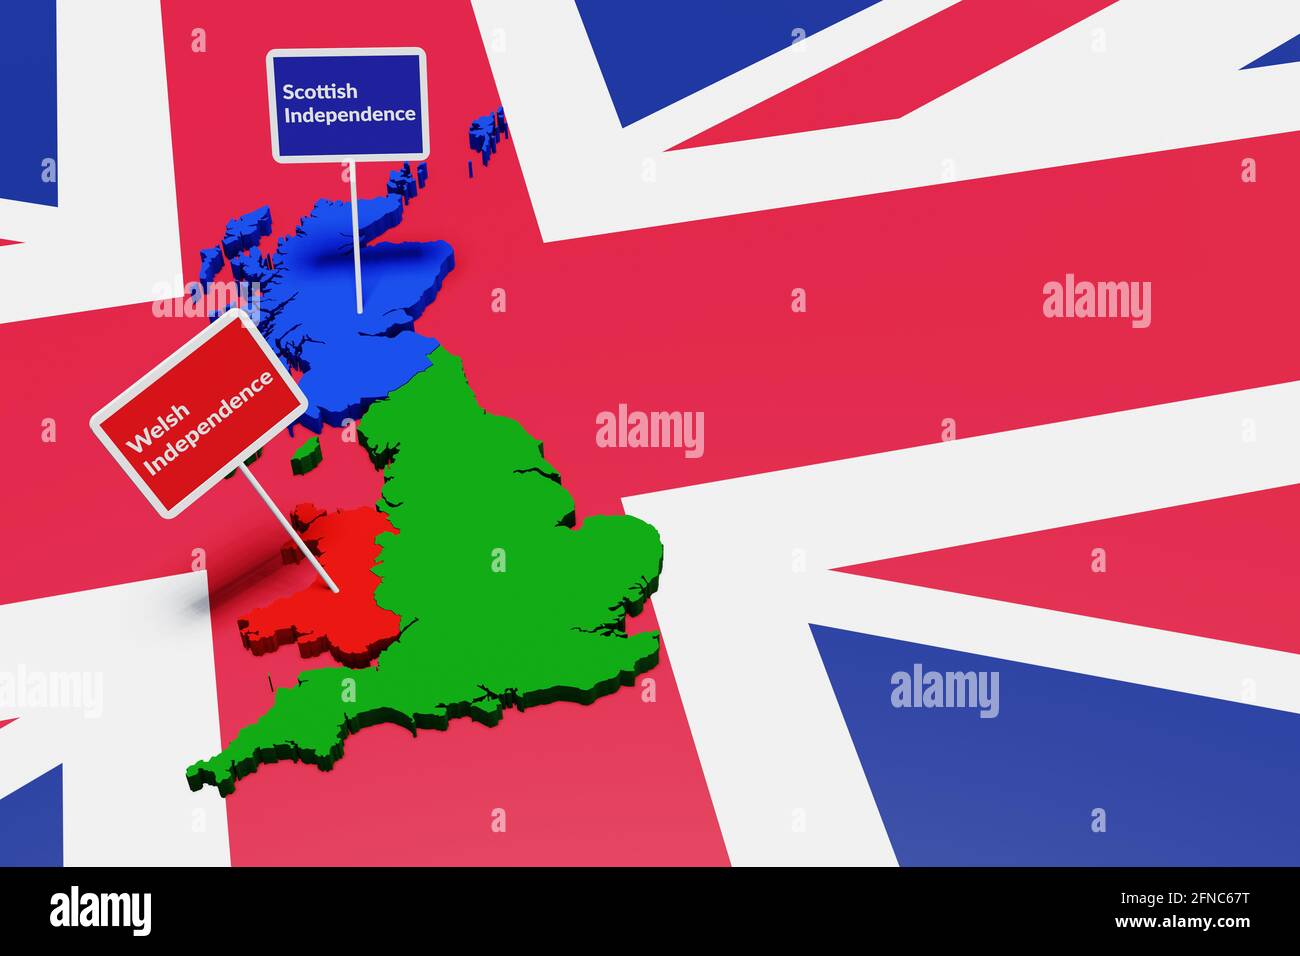 Vereinigtes Königreich, Wales, England, Schottland. Walisisches Und Schottisches Unabhängigkeitskonzept. 3D-Illustration Stockfoto